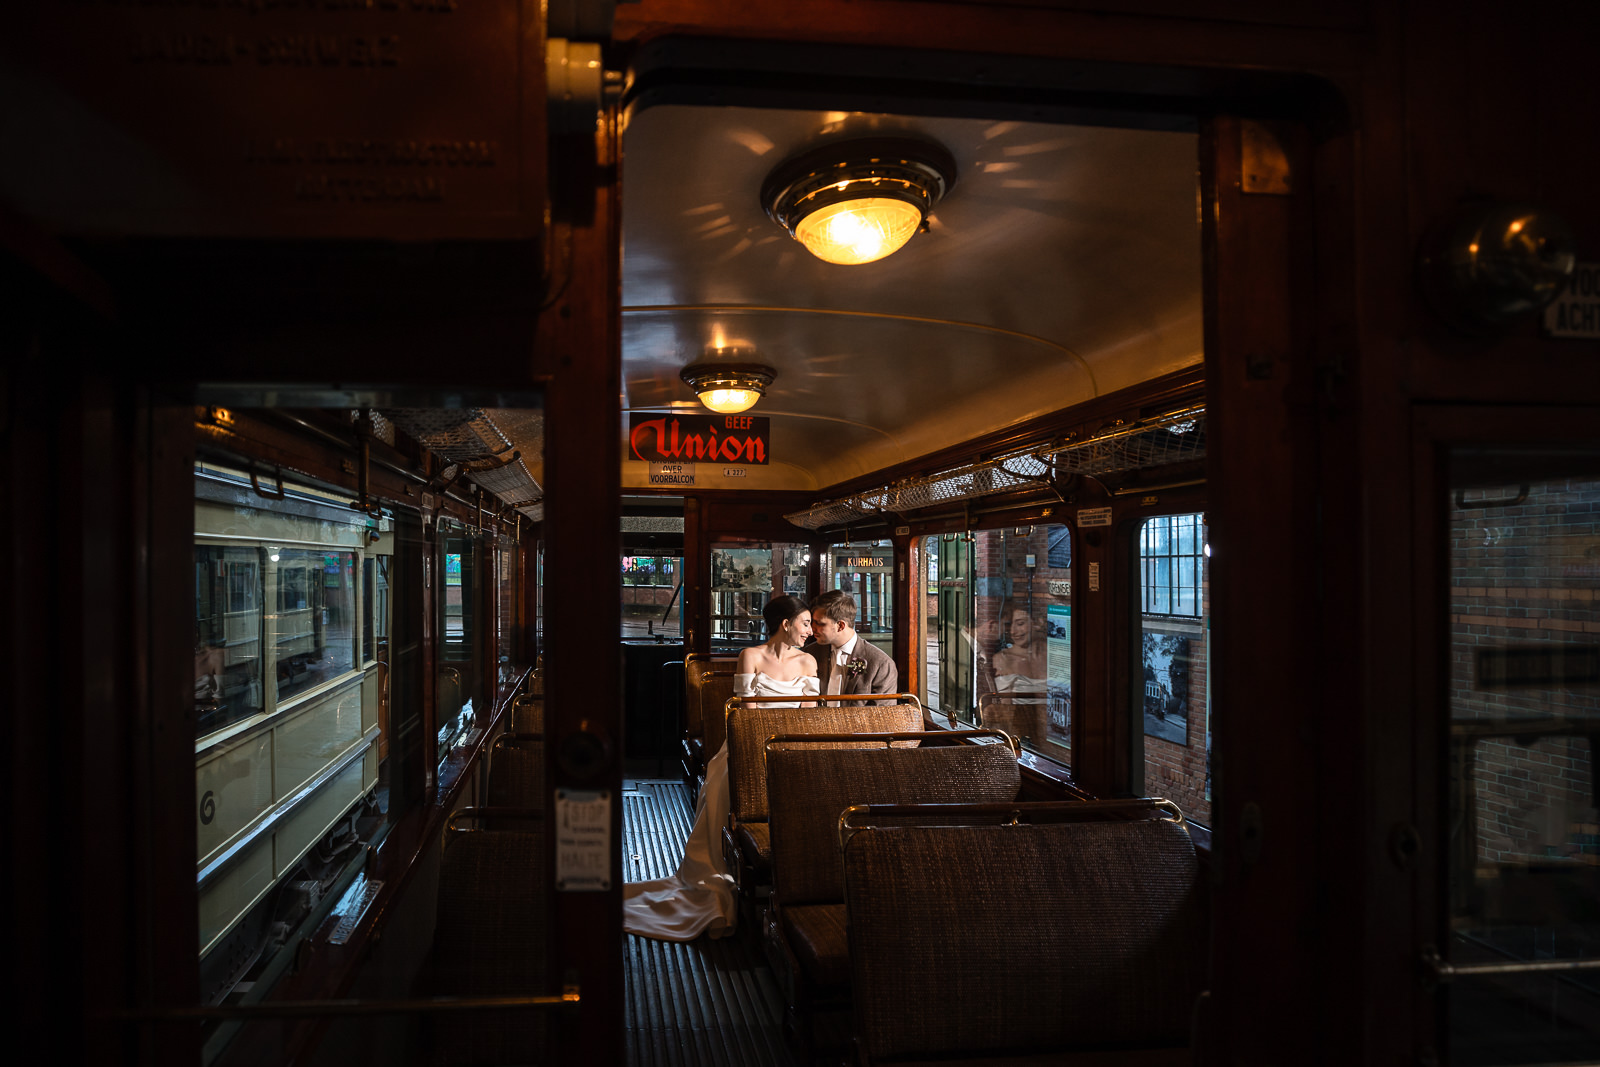 Bruidspaar fotoshoot in tram bij Haags Openbaar vervoer Museum Tram Remise vastgelegd door Trouwfotograaf Den Haag Paco van Leeuwen